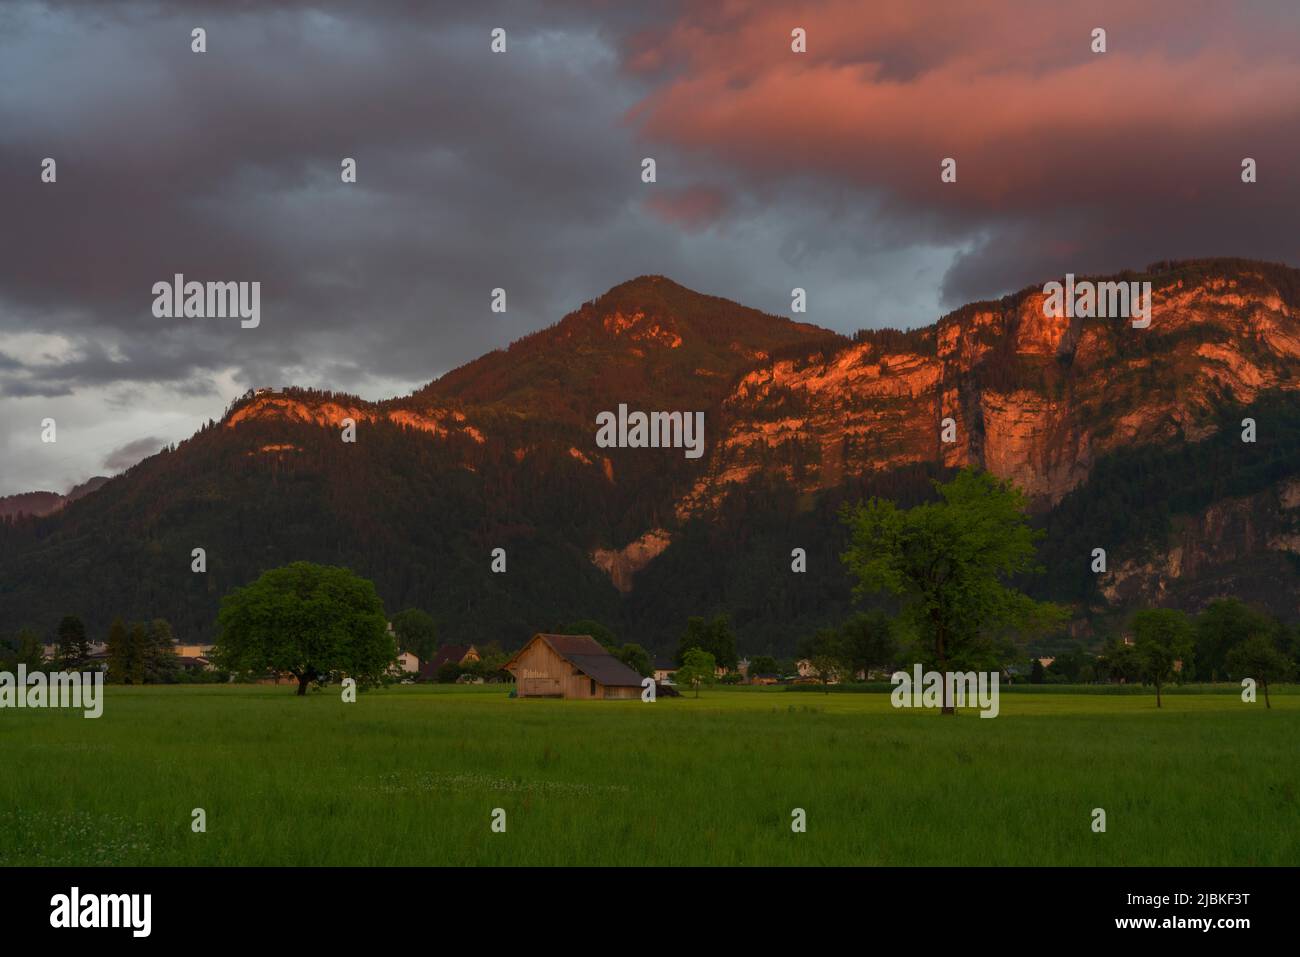 Dämmerung nach dem Sonnenuntergang in Dornbirn, Vorarlberg, Österreich. Tolle Stimmung mit interessanteren graublau Wolken, grünen Wiesen und Haus Stockfoto